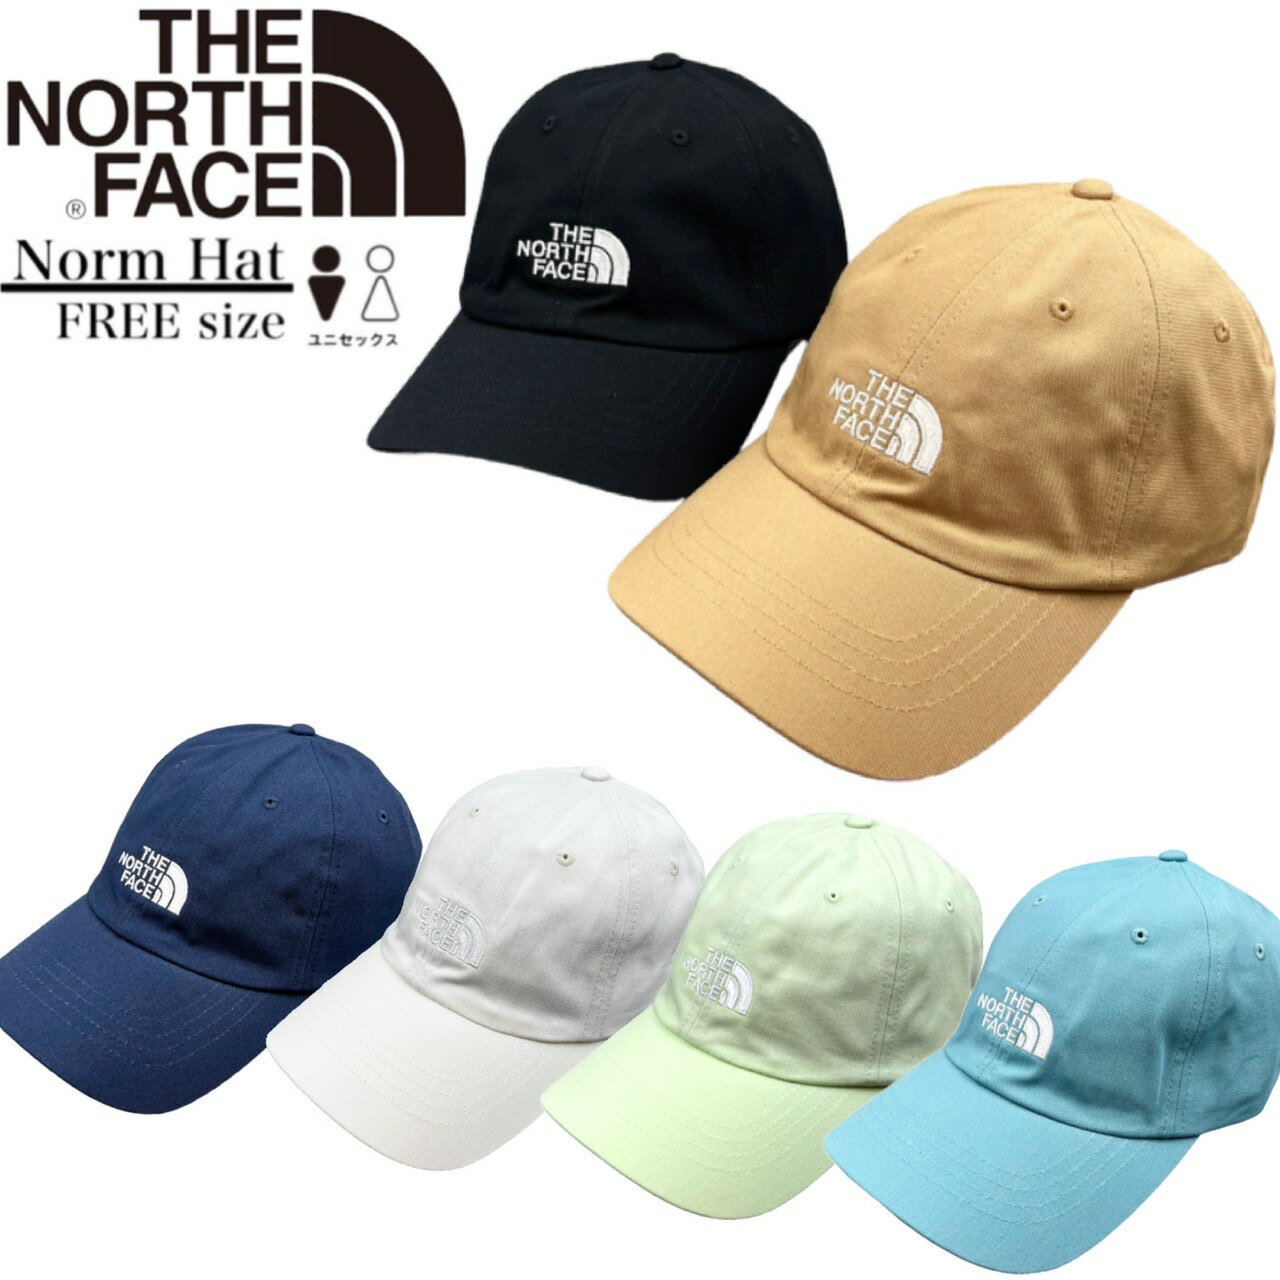 ザ・ノース・フェイス 帽子 レディース ザ ノースフェイス The North Face ノーム ハット キャップ 帽子 ワンサイズ NF0A3SH3 ユニセックス メンズ レディース THE NORTH FACE NORM CAP